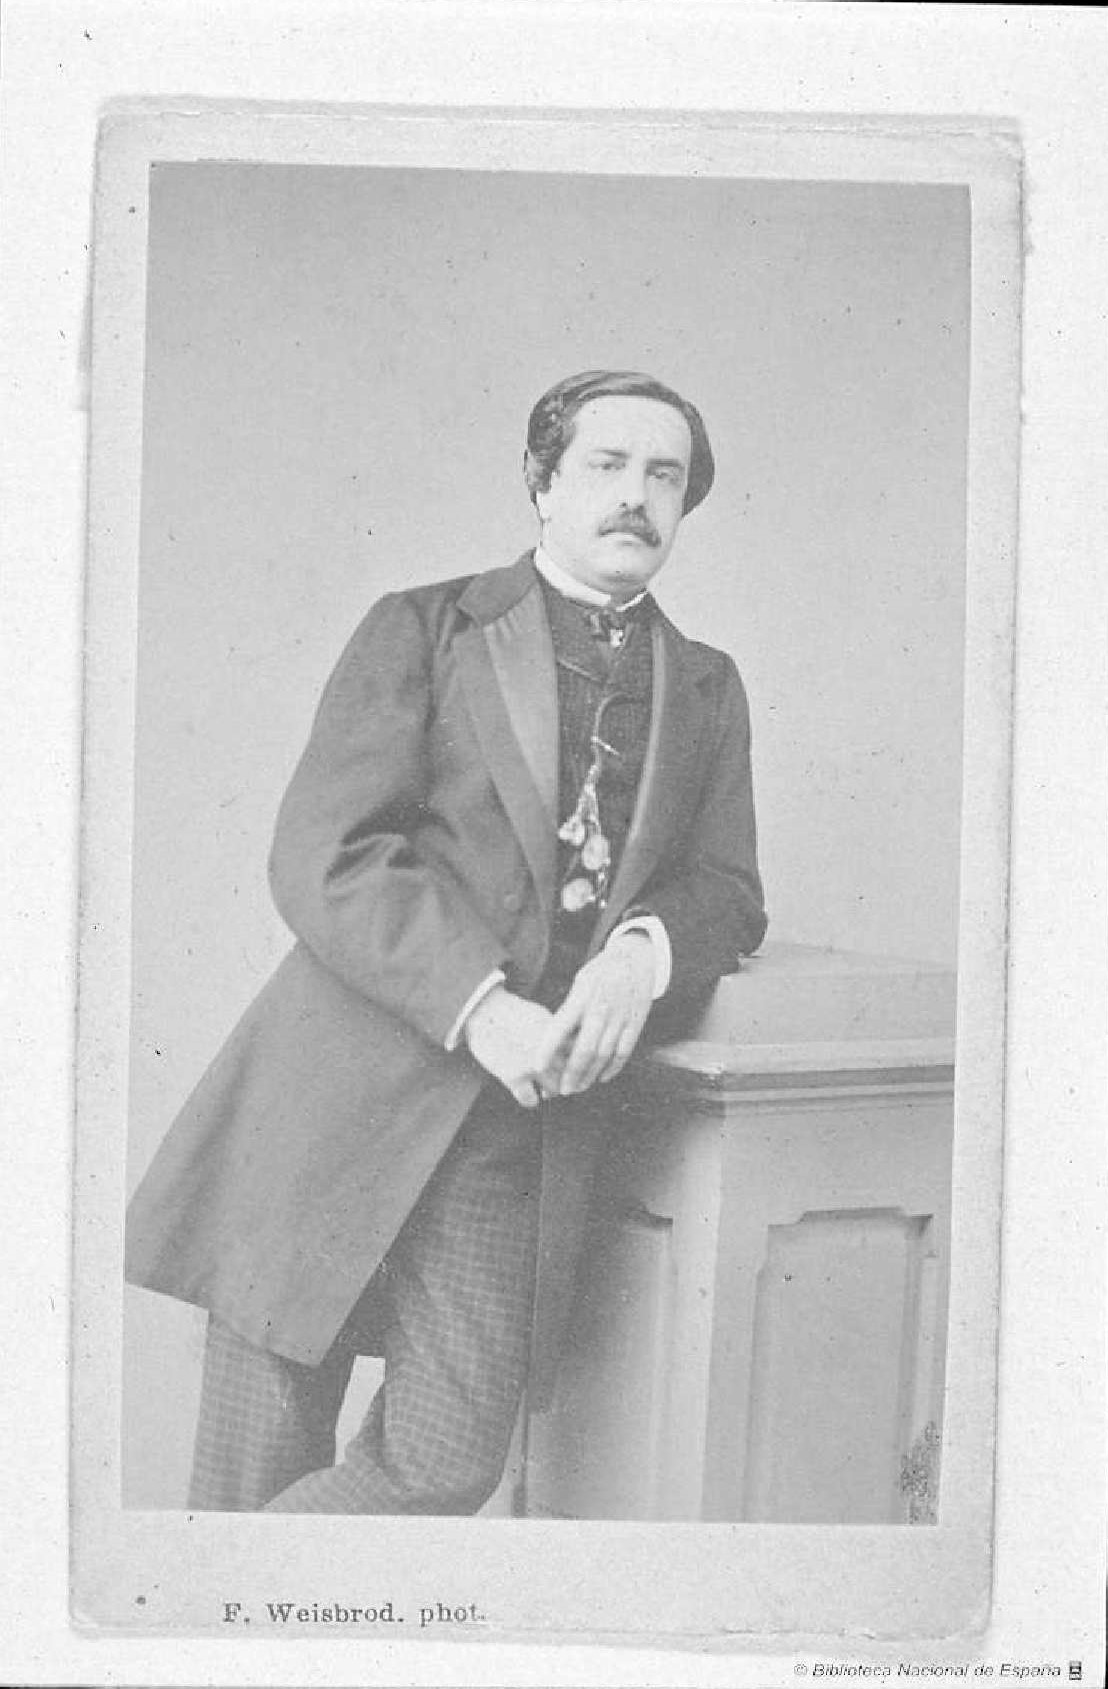 Retrato de Juan Valera. F. Weisbrod. phot. Entre 1870 y 1879. Fondo de la Biblioteca Nacional de España.